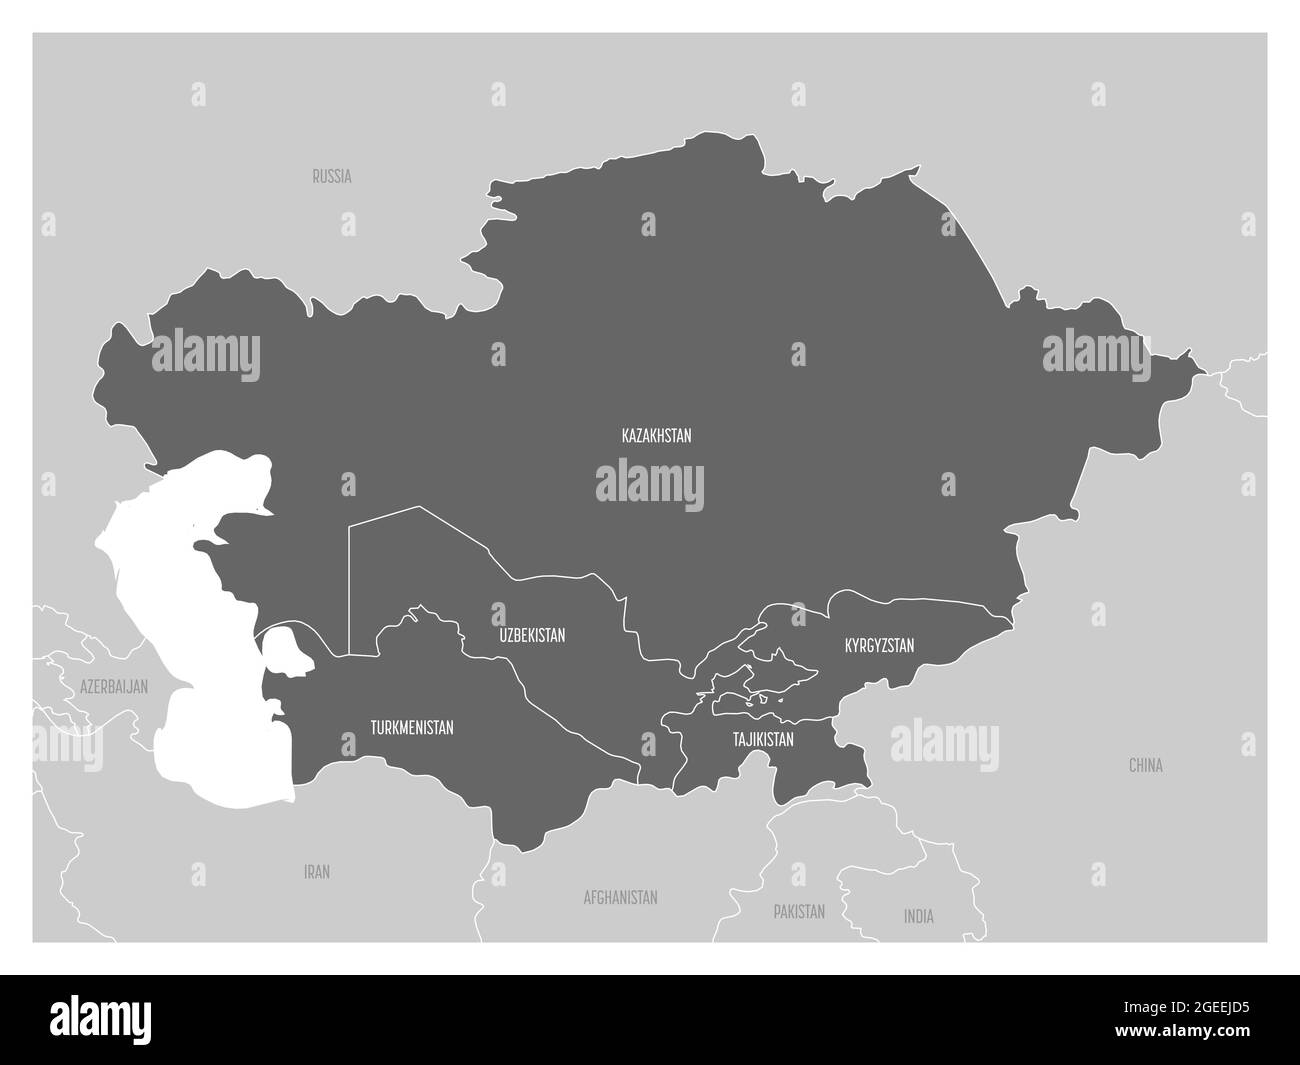 Mappa della regione dell'Asia centrale con in evidenza Kazakistan, Kirghizistan, Tagikistan, Turkmenistan e Uzbekistan. Mappa grigia piatta con confini bianchi del paese. Illustrazione Vettoriale